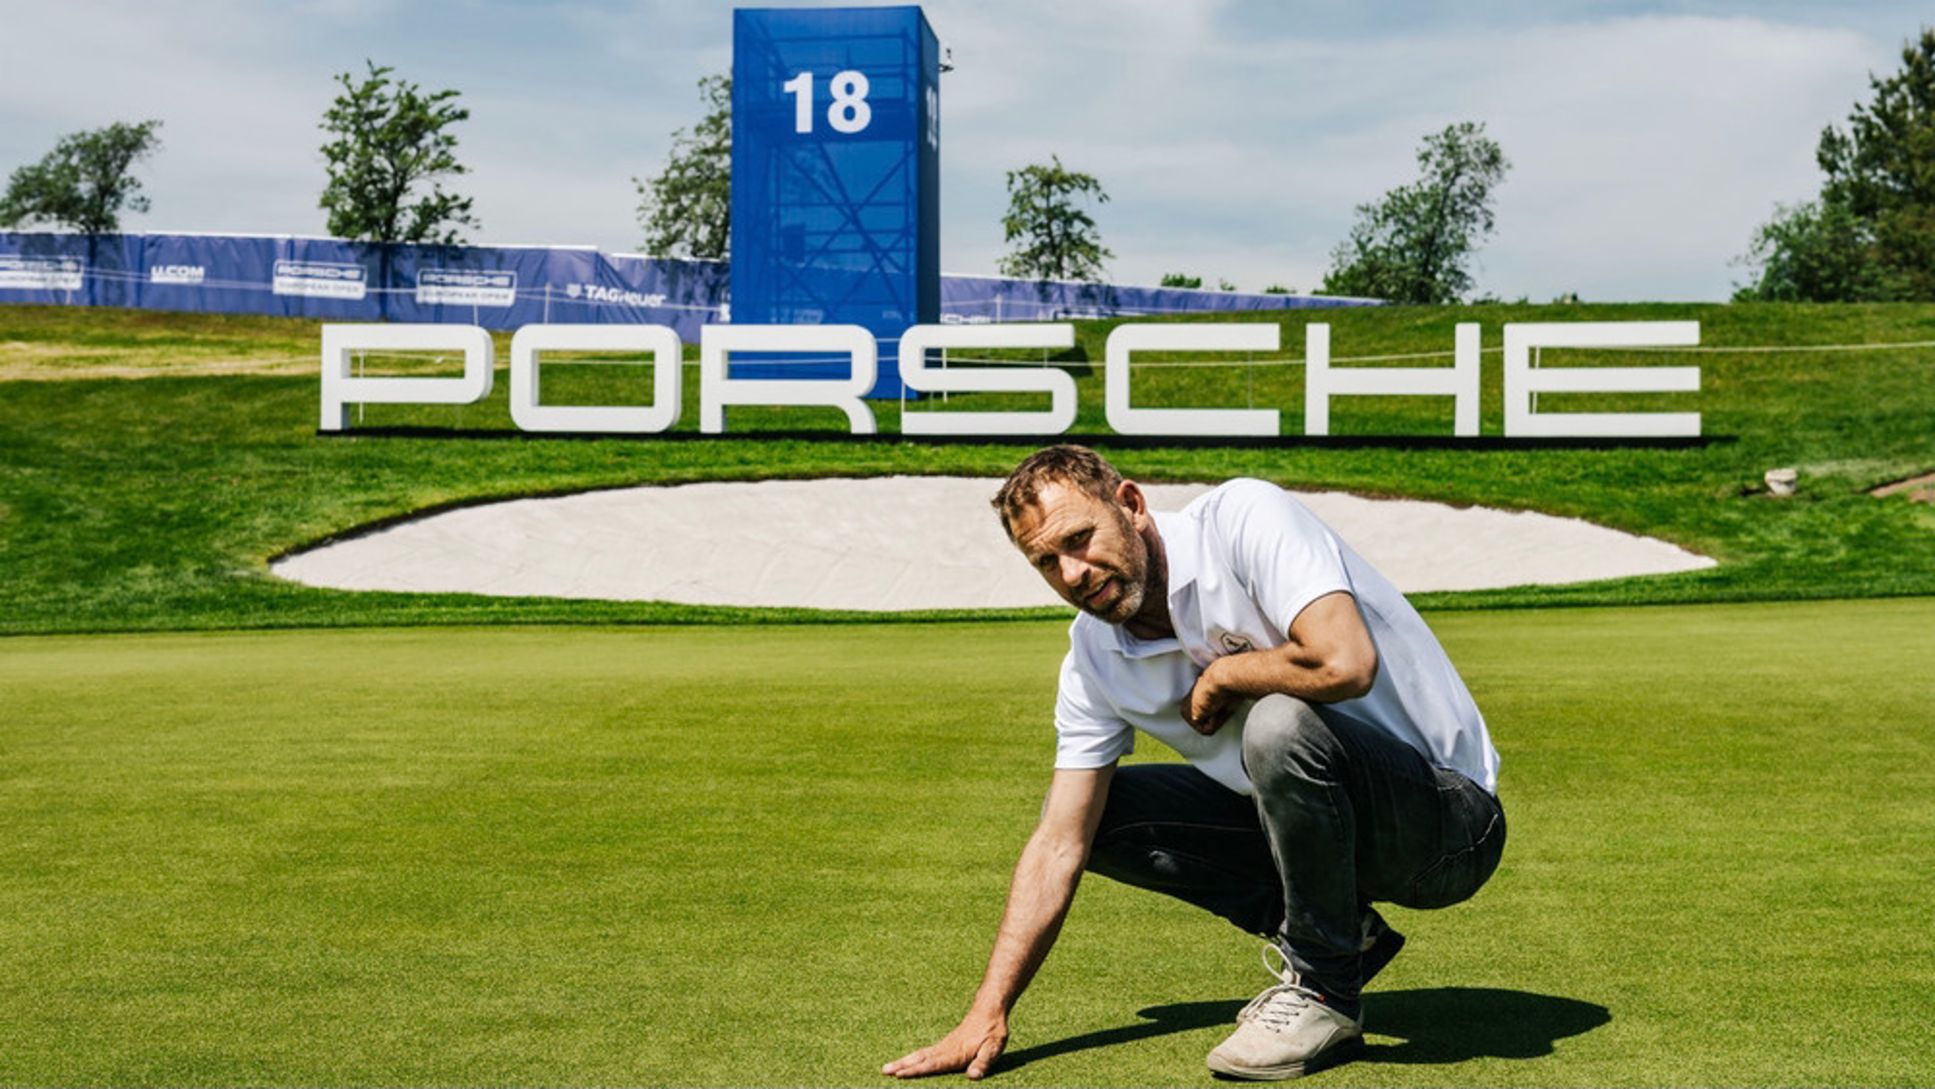 Michael Blesch, co-operator and designer of the Porsche Nord Course, on the 18th green, 2021, Porsche AG